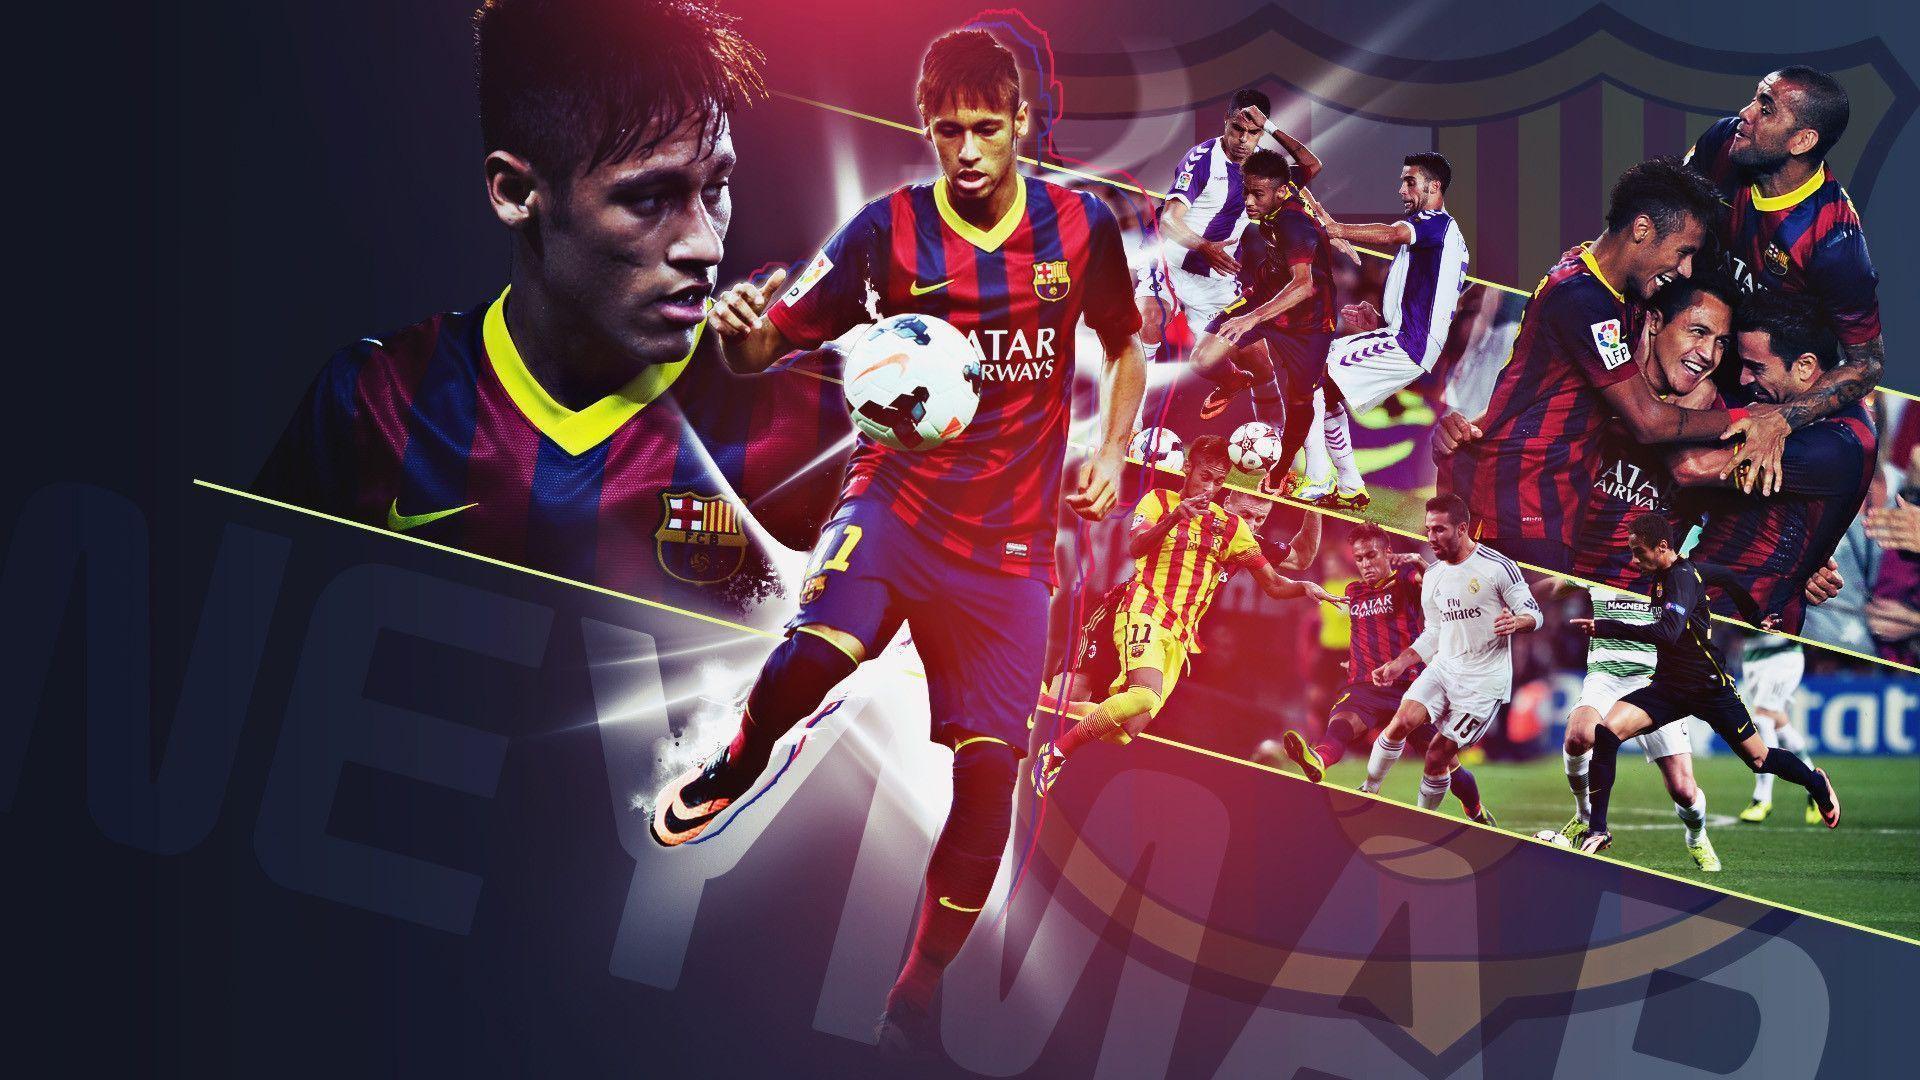 Neymar FC Barcelona image for wallpaper